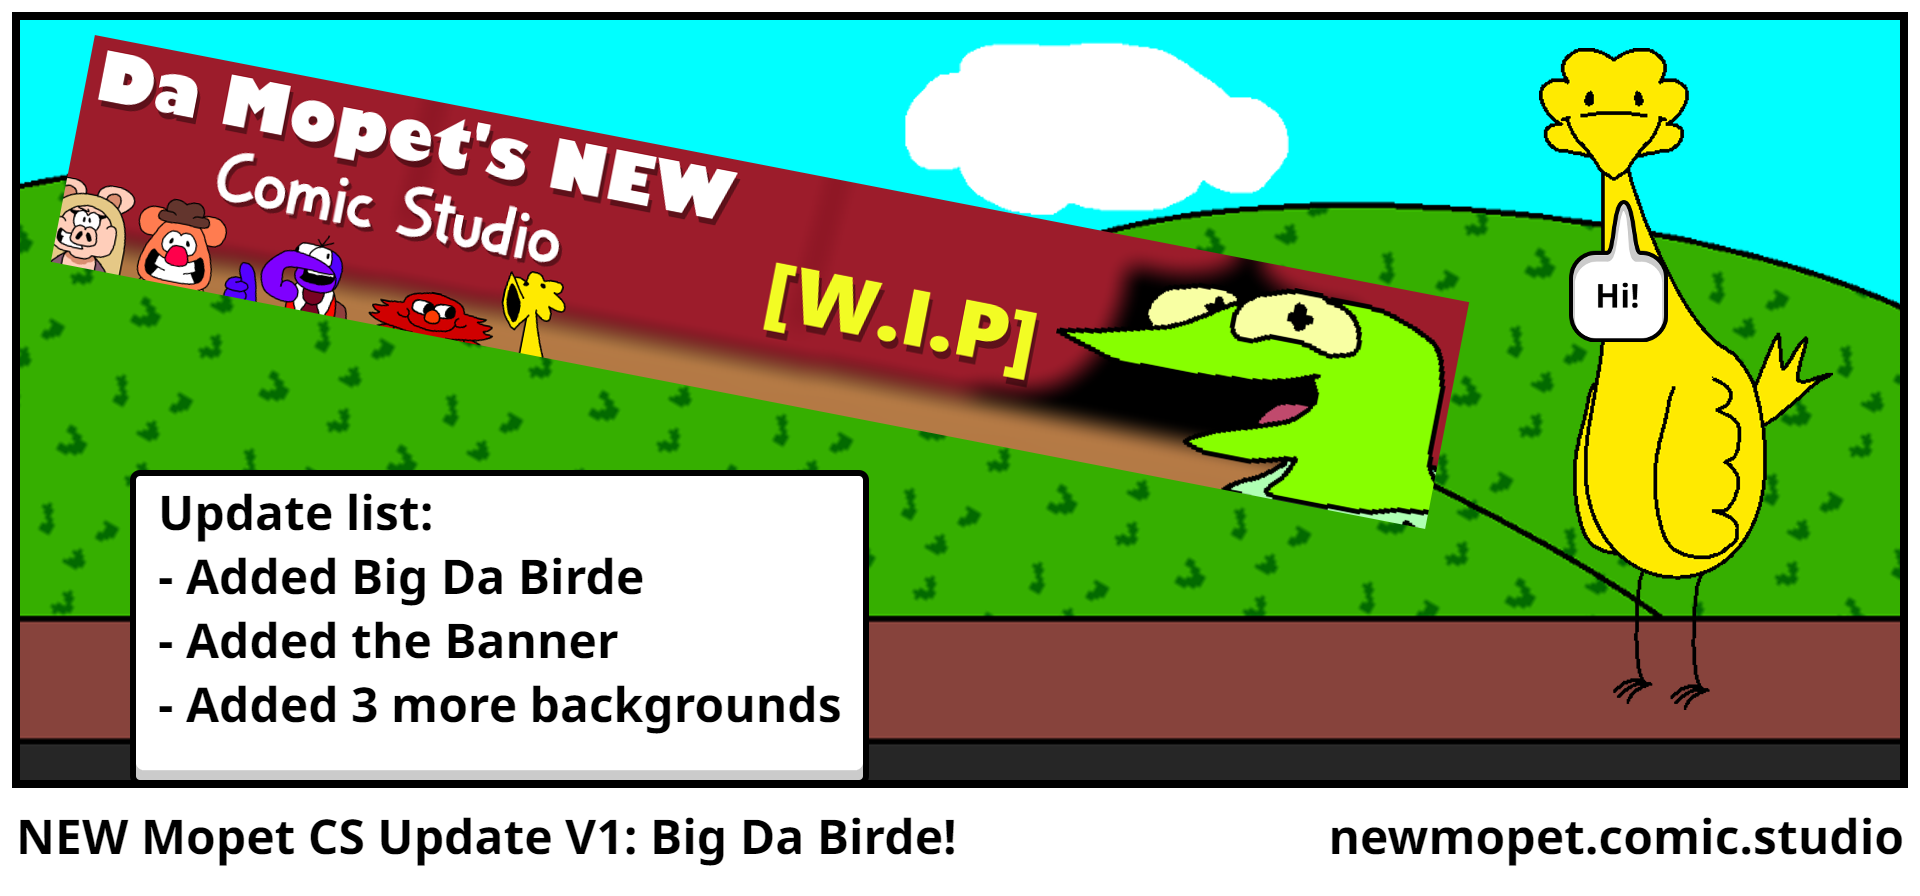 NEW Mopet CS Update V1: Big Da Birde!